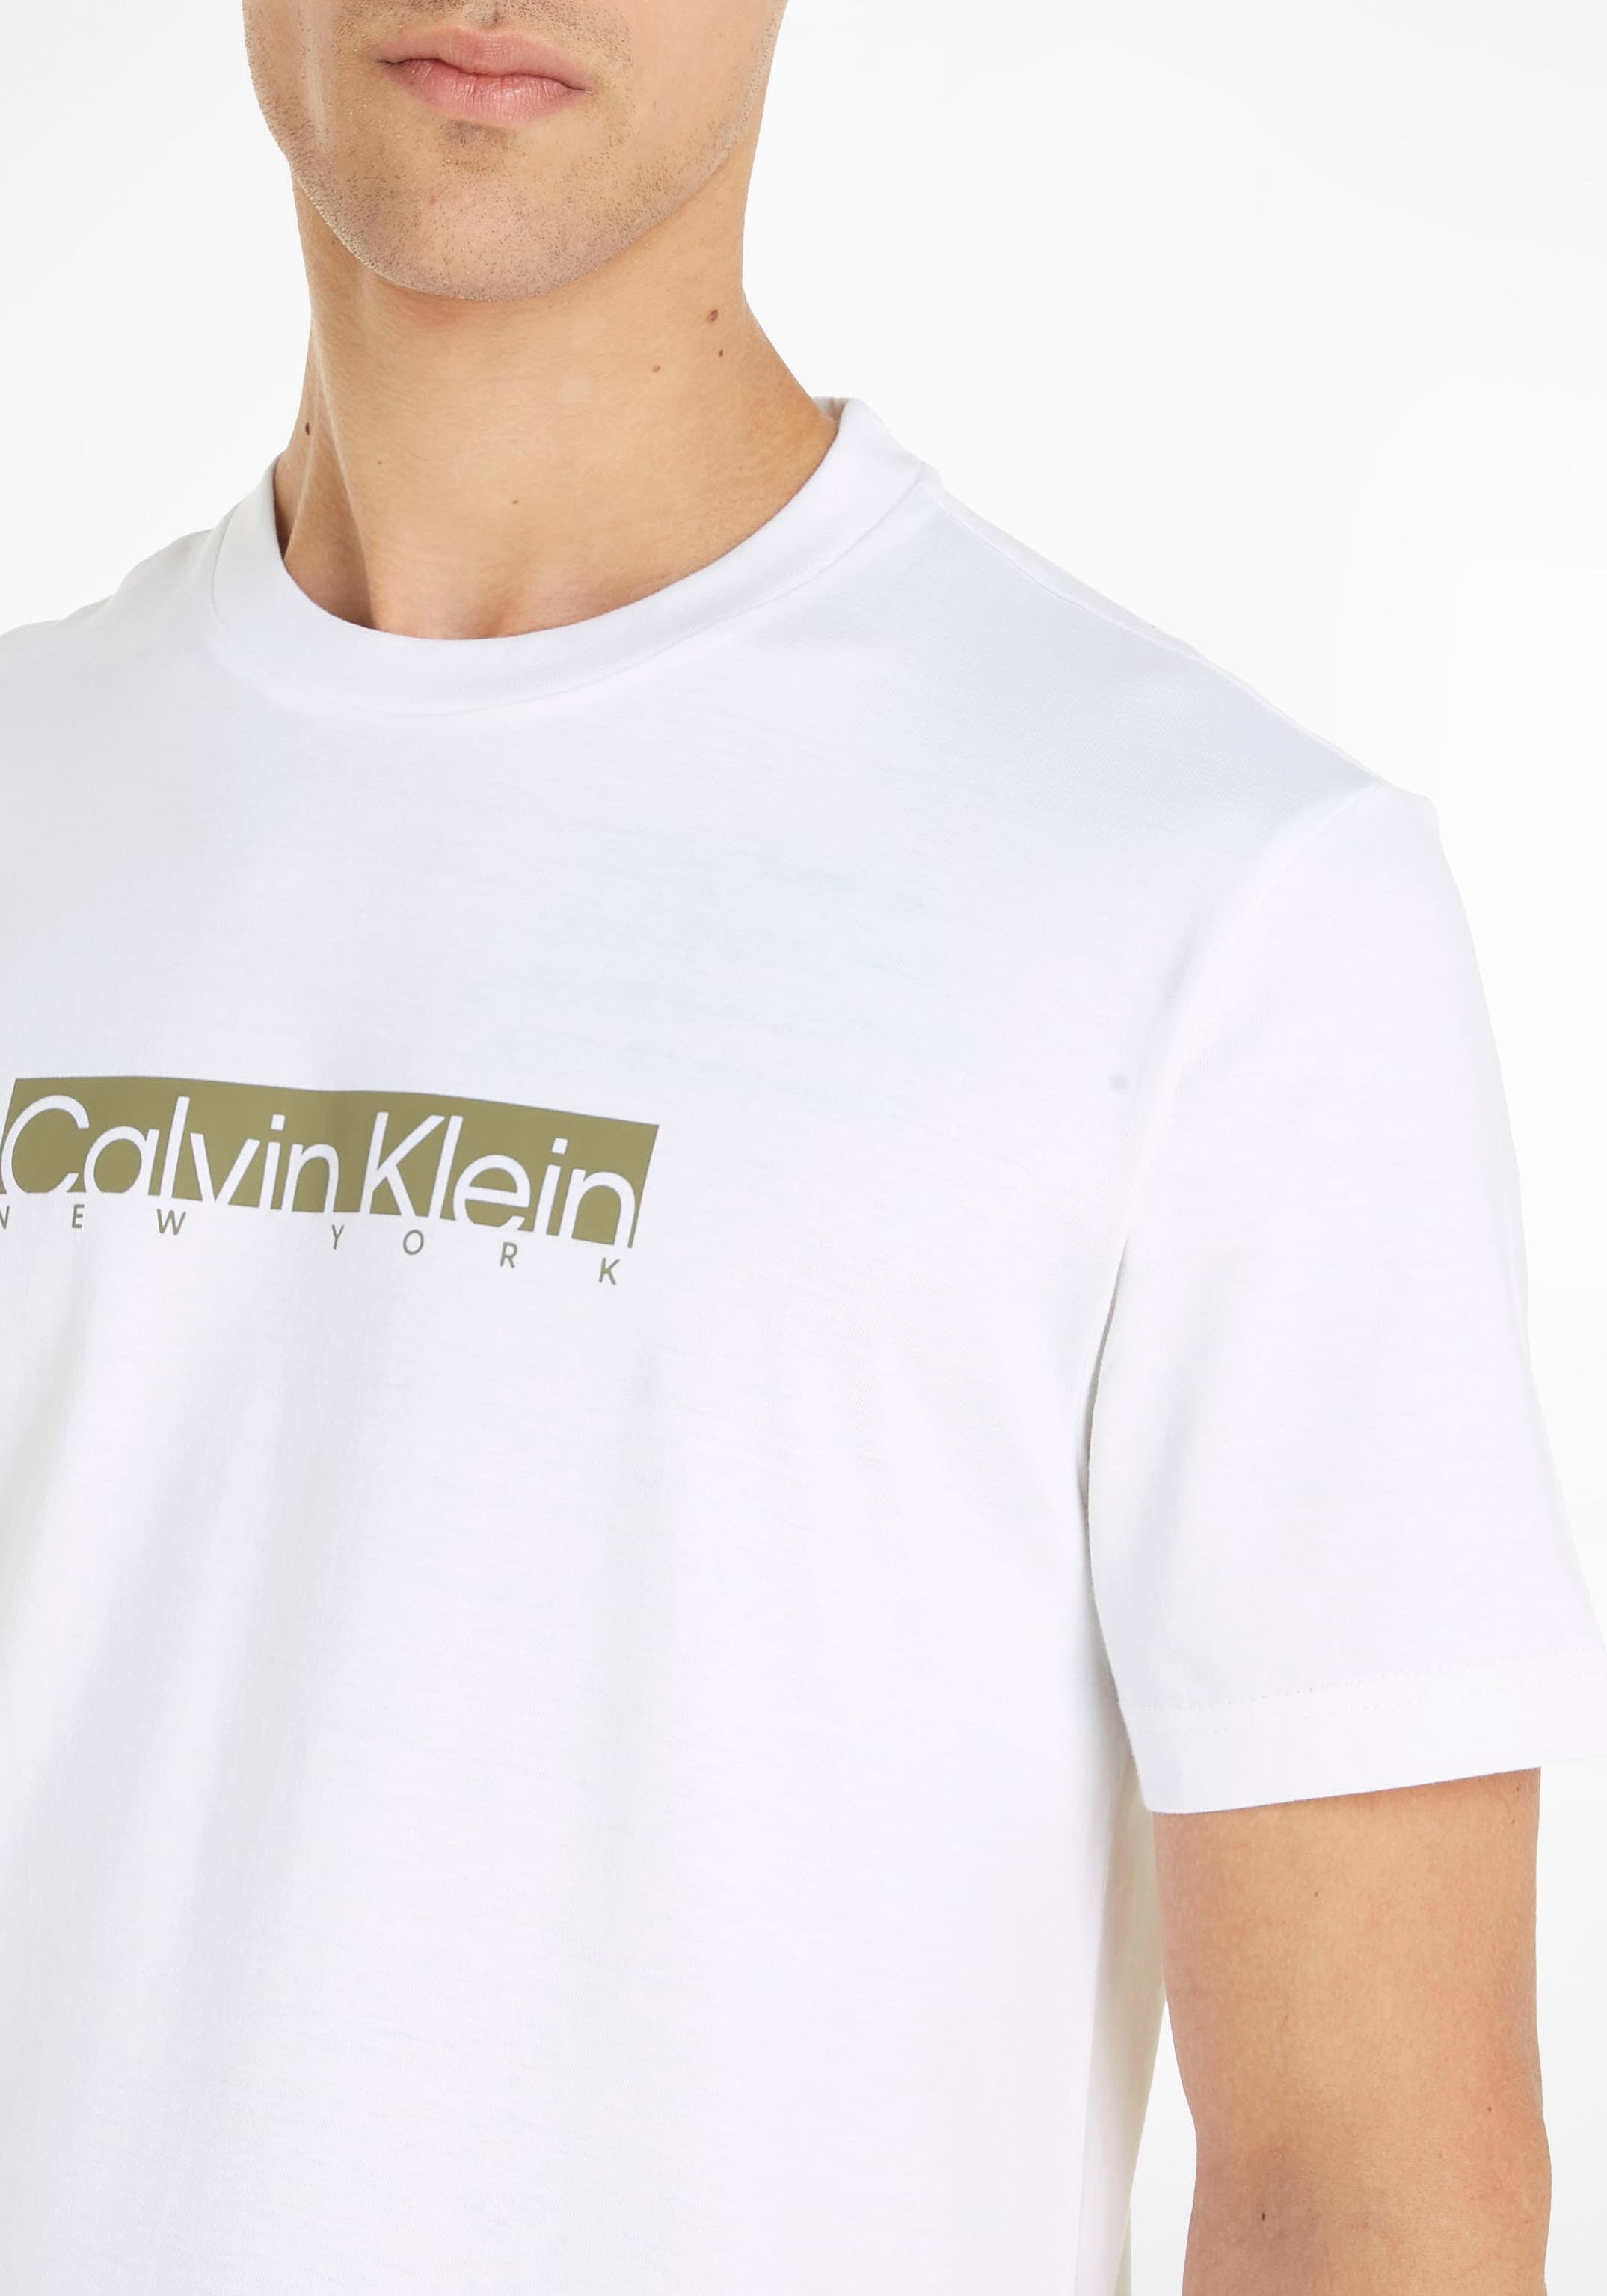 mit Klein Brust der Calvin Klein Kurzarmshirt, Logo online kaufen auf Calvin